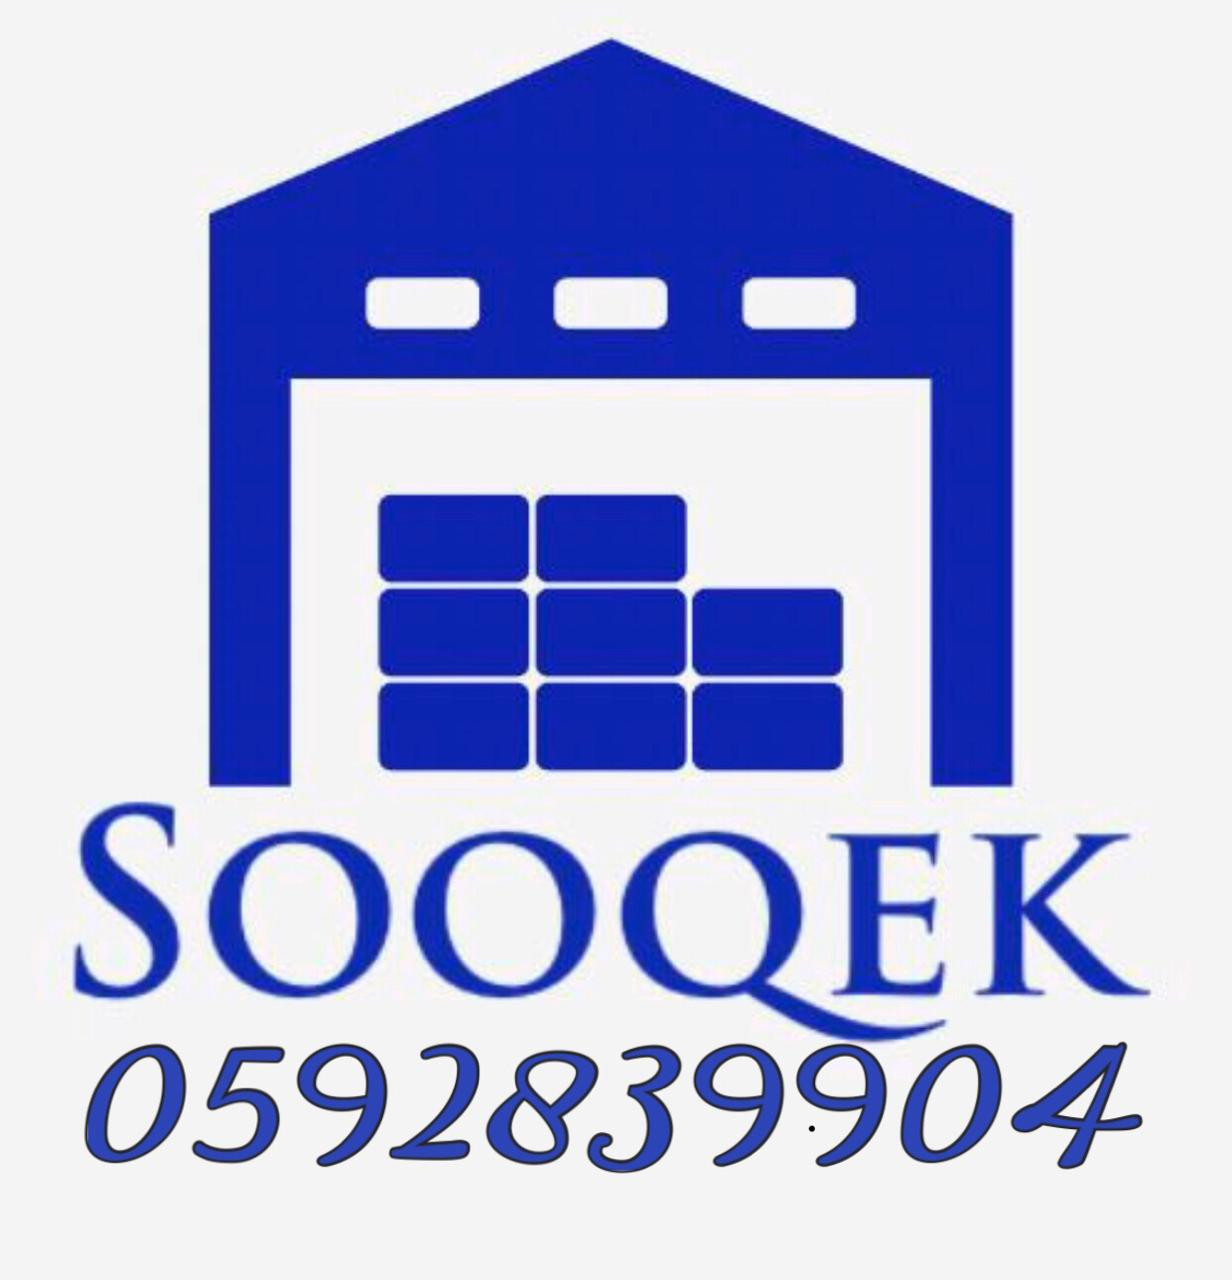 Sooqek logo